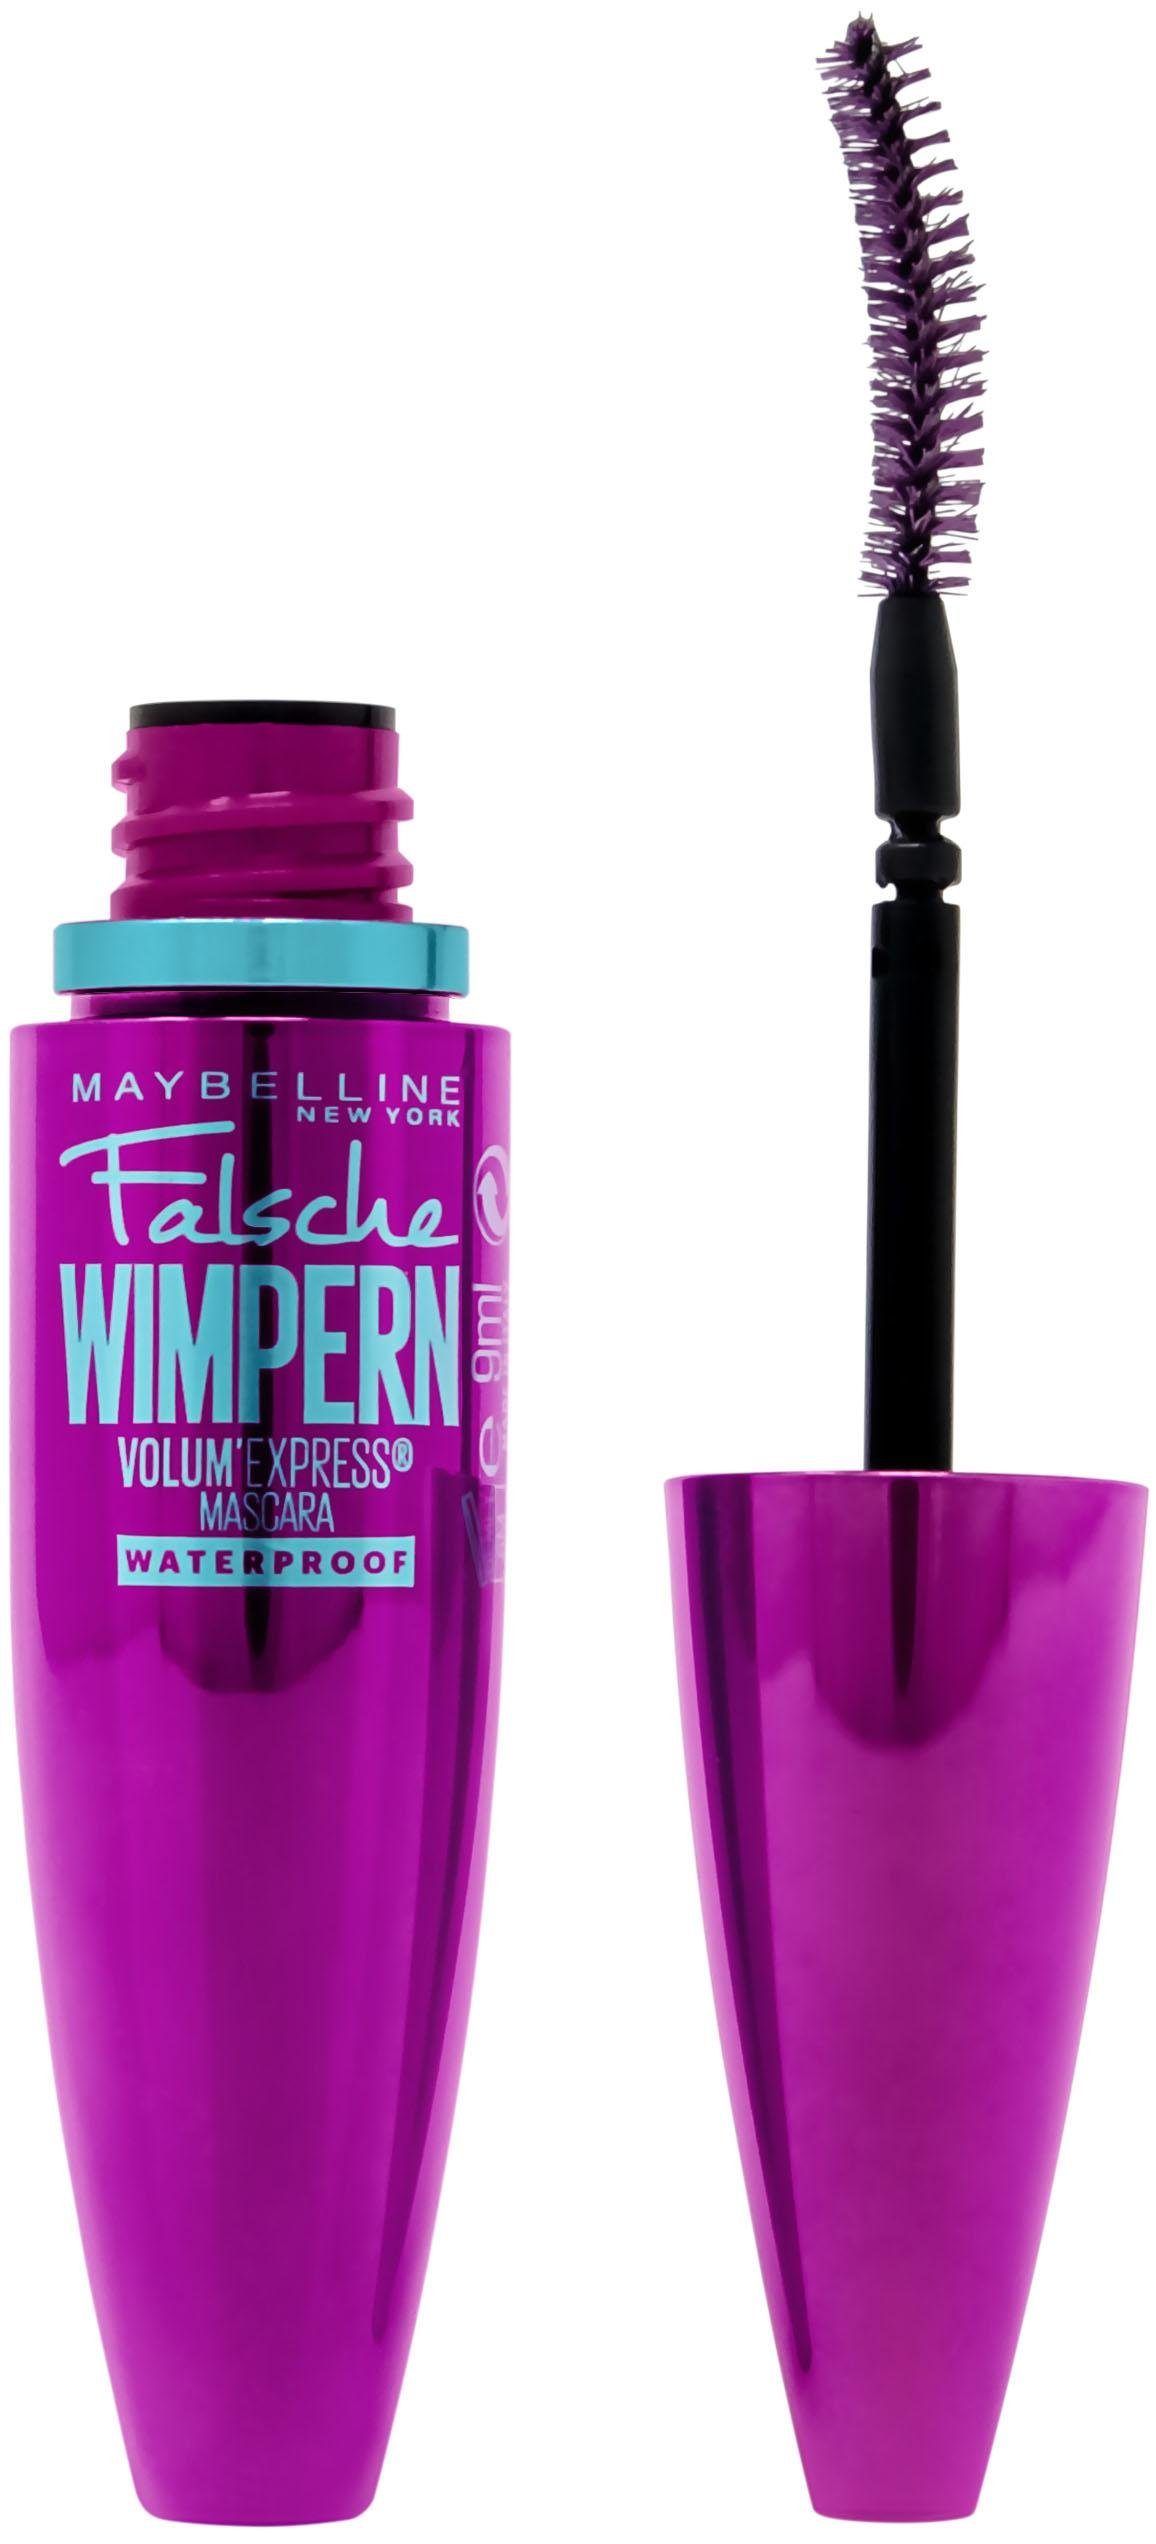 MAYBELLINE NEW YORK Mascara Volum‘ Express Falsche Wimpern Waterproof, Patentierte Löffelbürste | Mascara